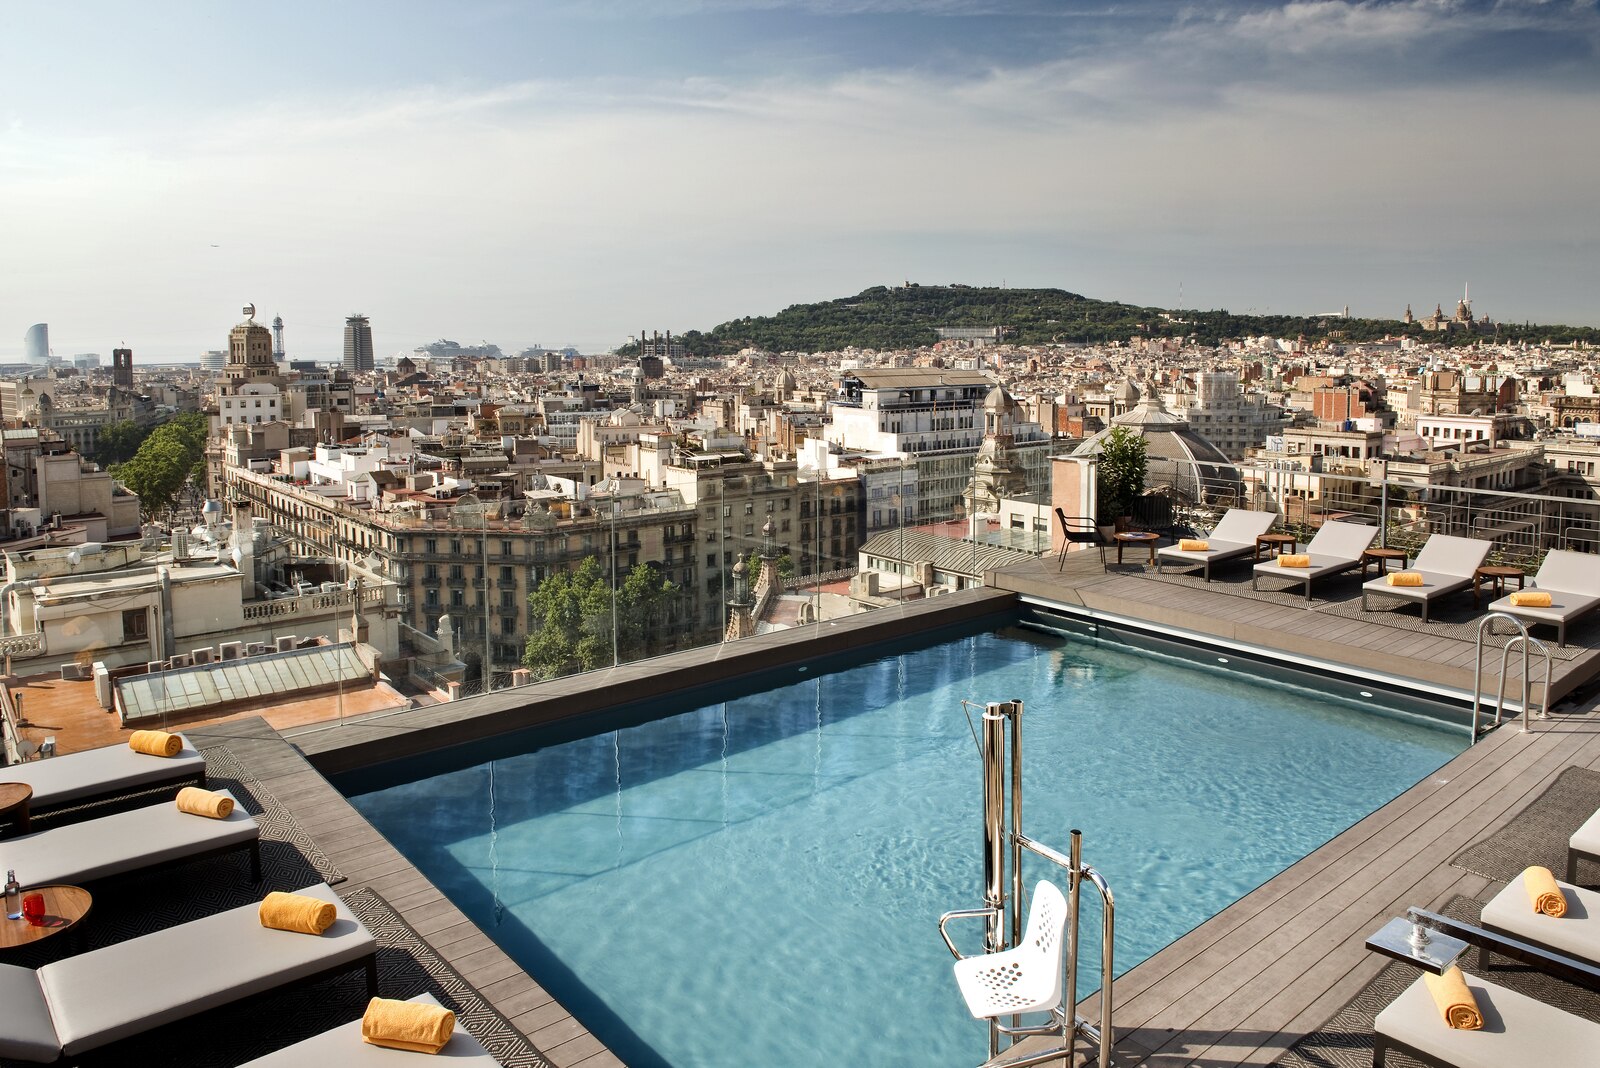 Imagen del NH Gran Hotel Calderón de Barcelona.